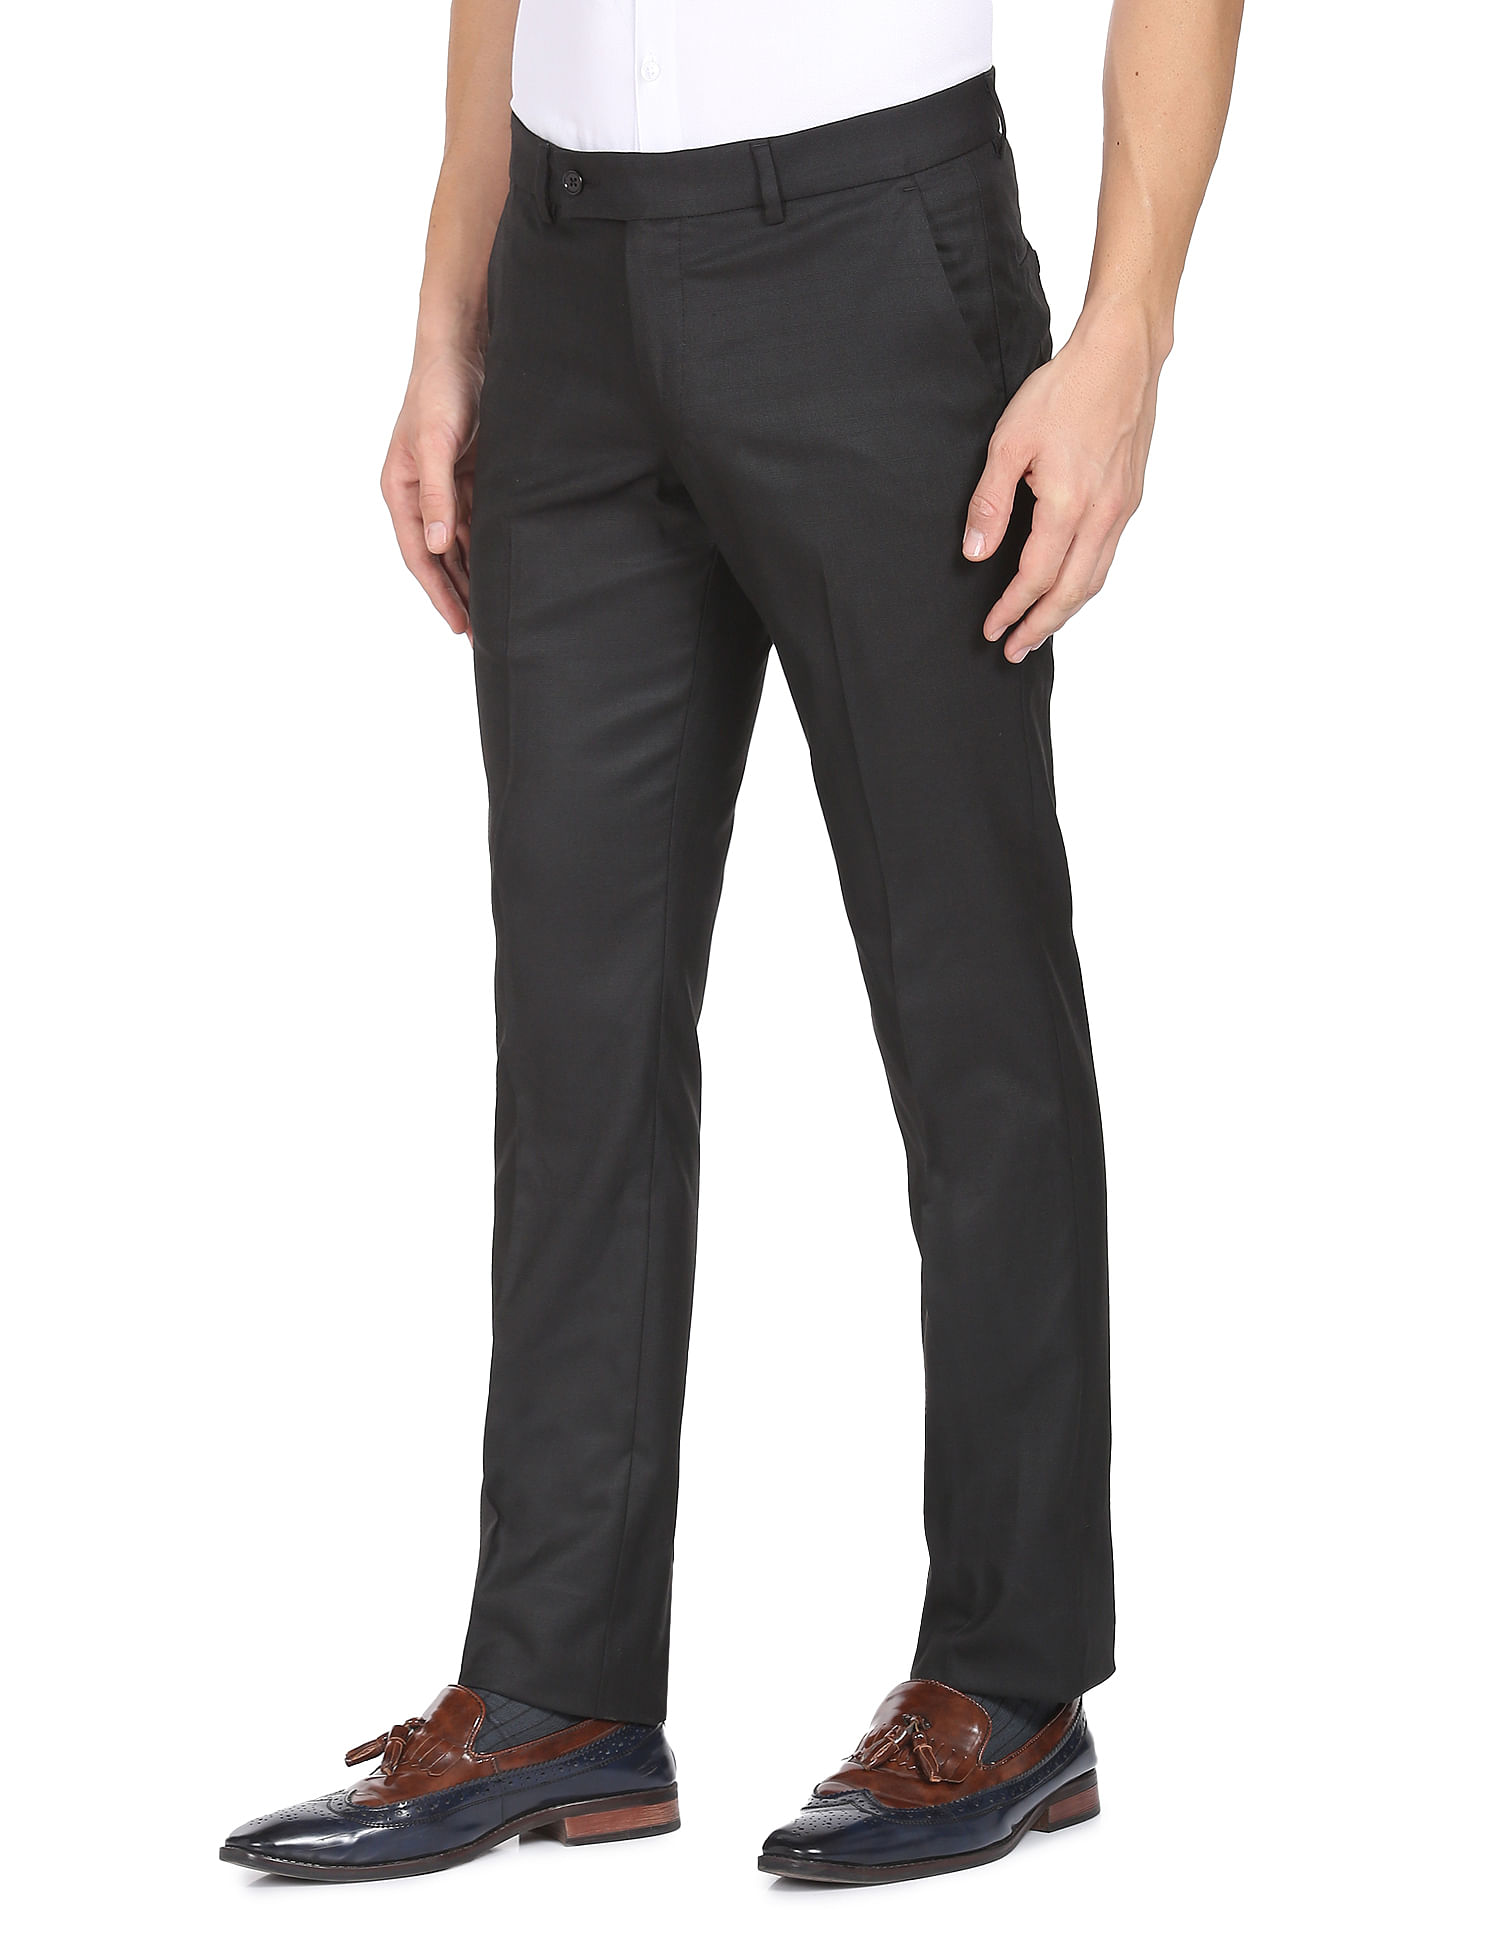 Slim Fit Suit Pants for Men Stretch Dress Pants Flat Front Business  Separate Pants Black 30Wx29L at Amazon Men's Clothing store